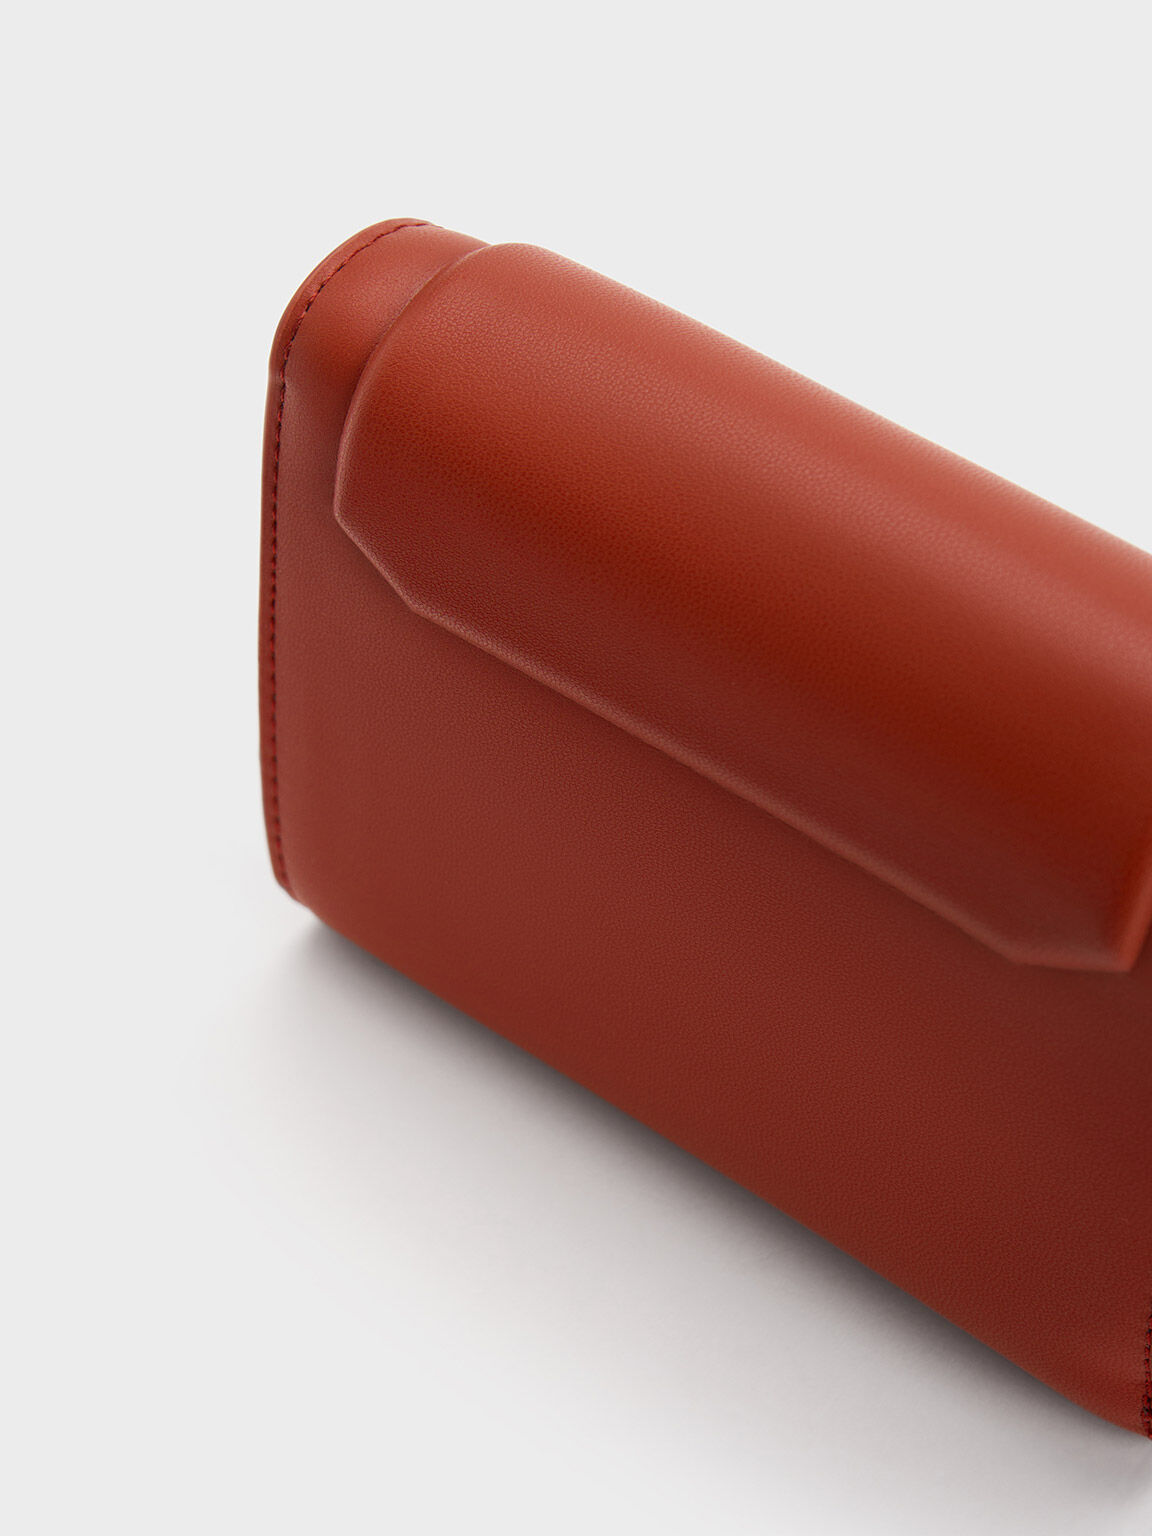 Kalinda 磁釦三摺短夾, 磚紅色, hi-res